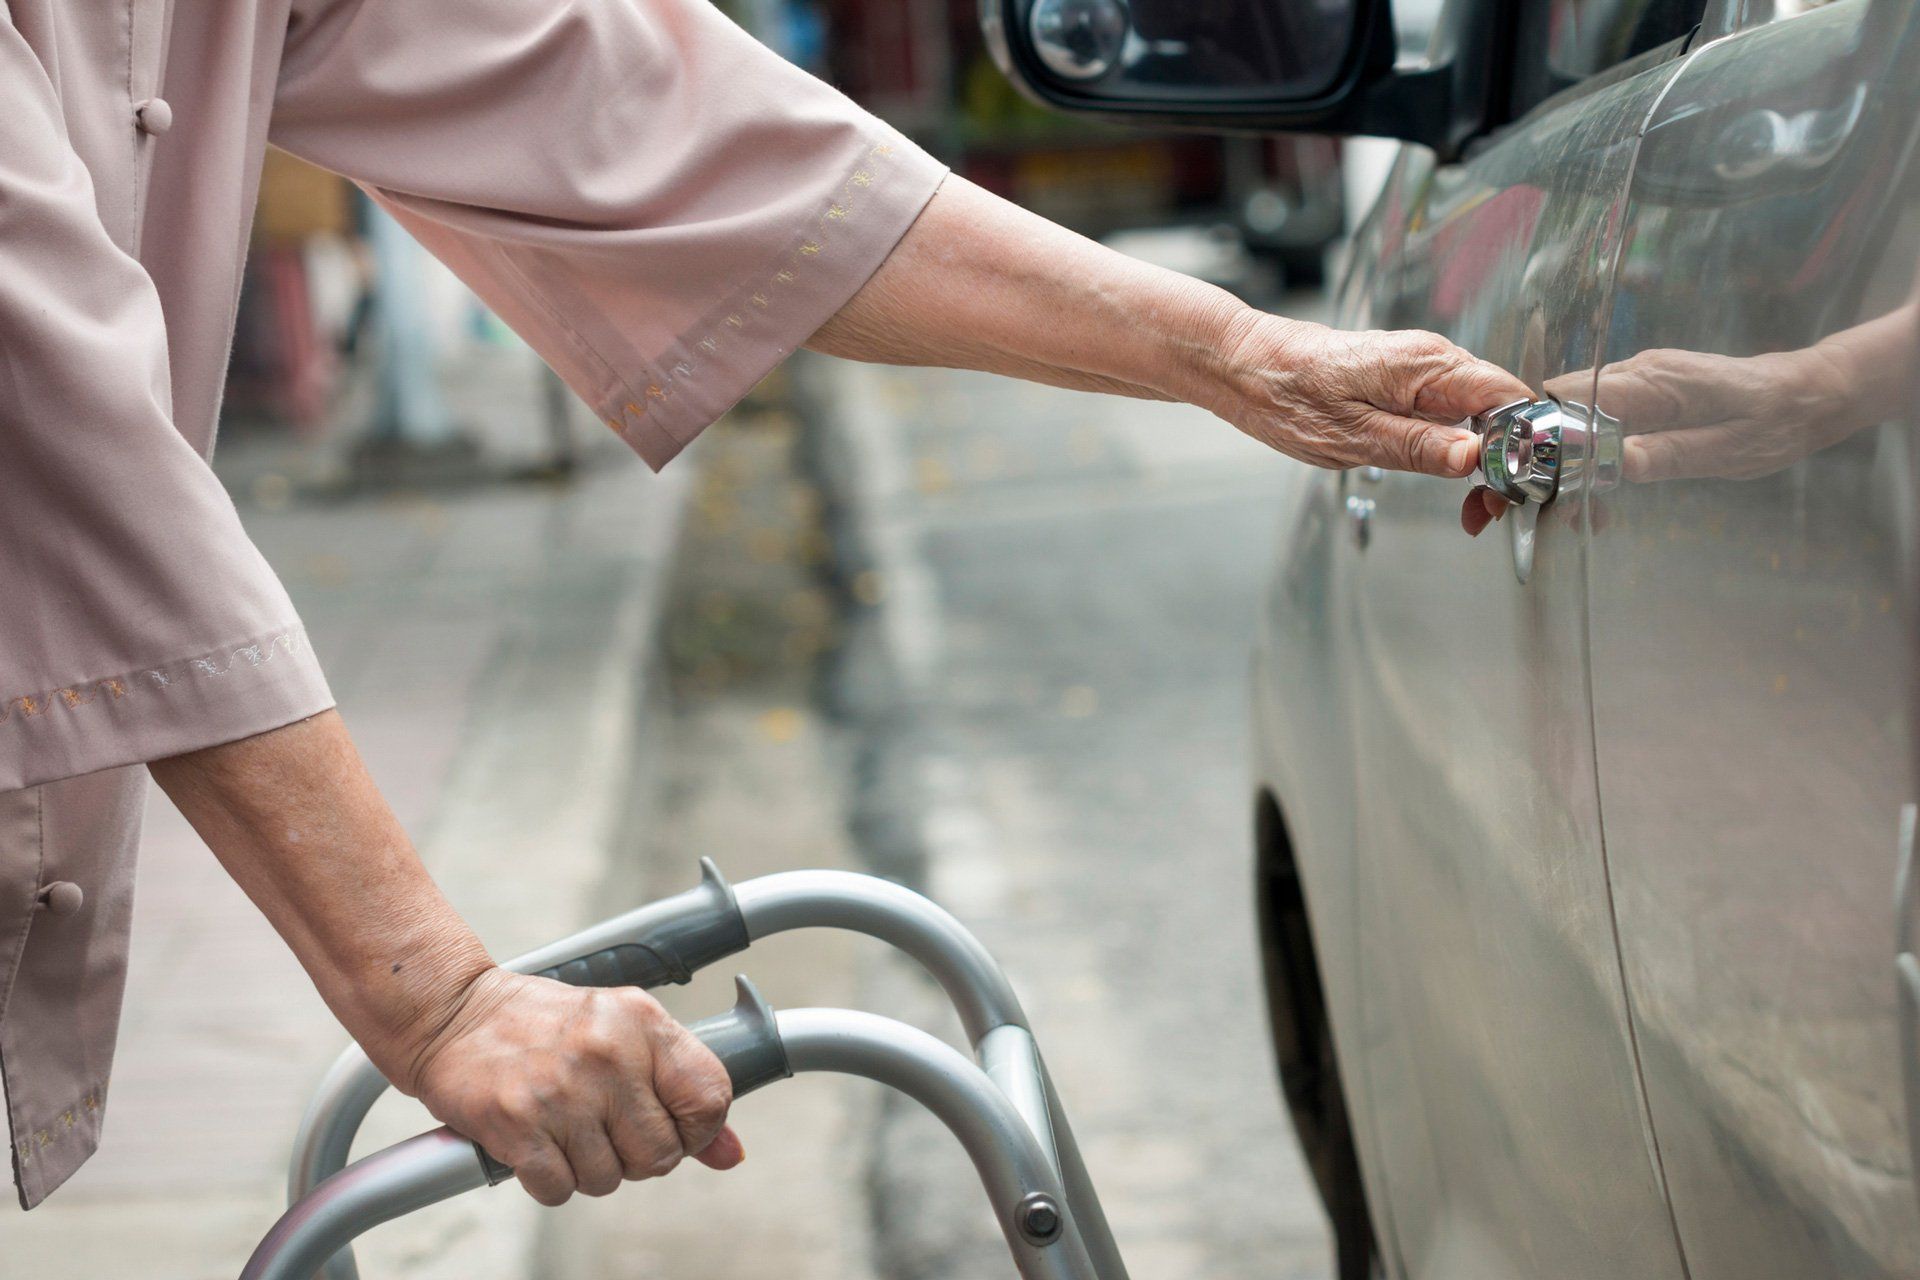 Elderly Transportation — Senior Woman Open Car Door With Walker On Street in Marco Island, FL